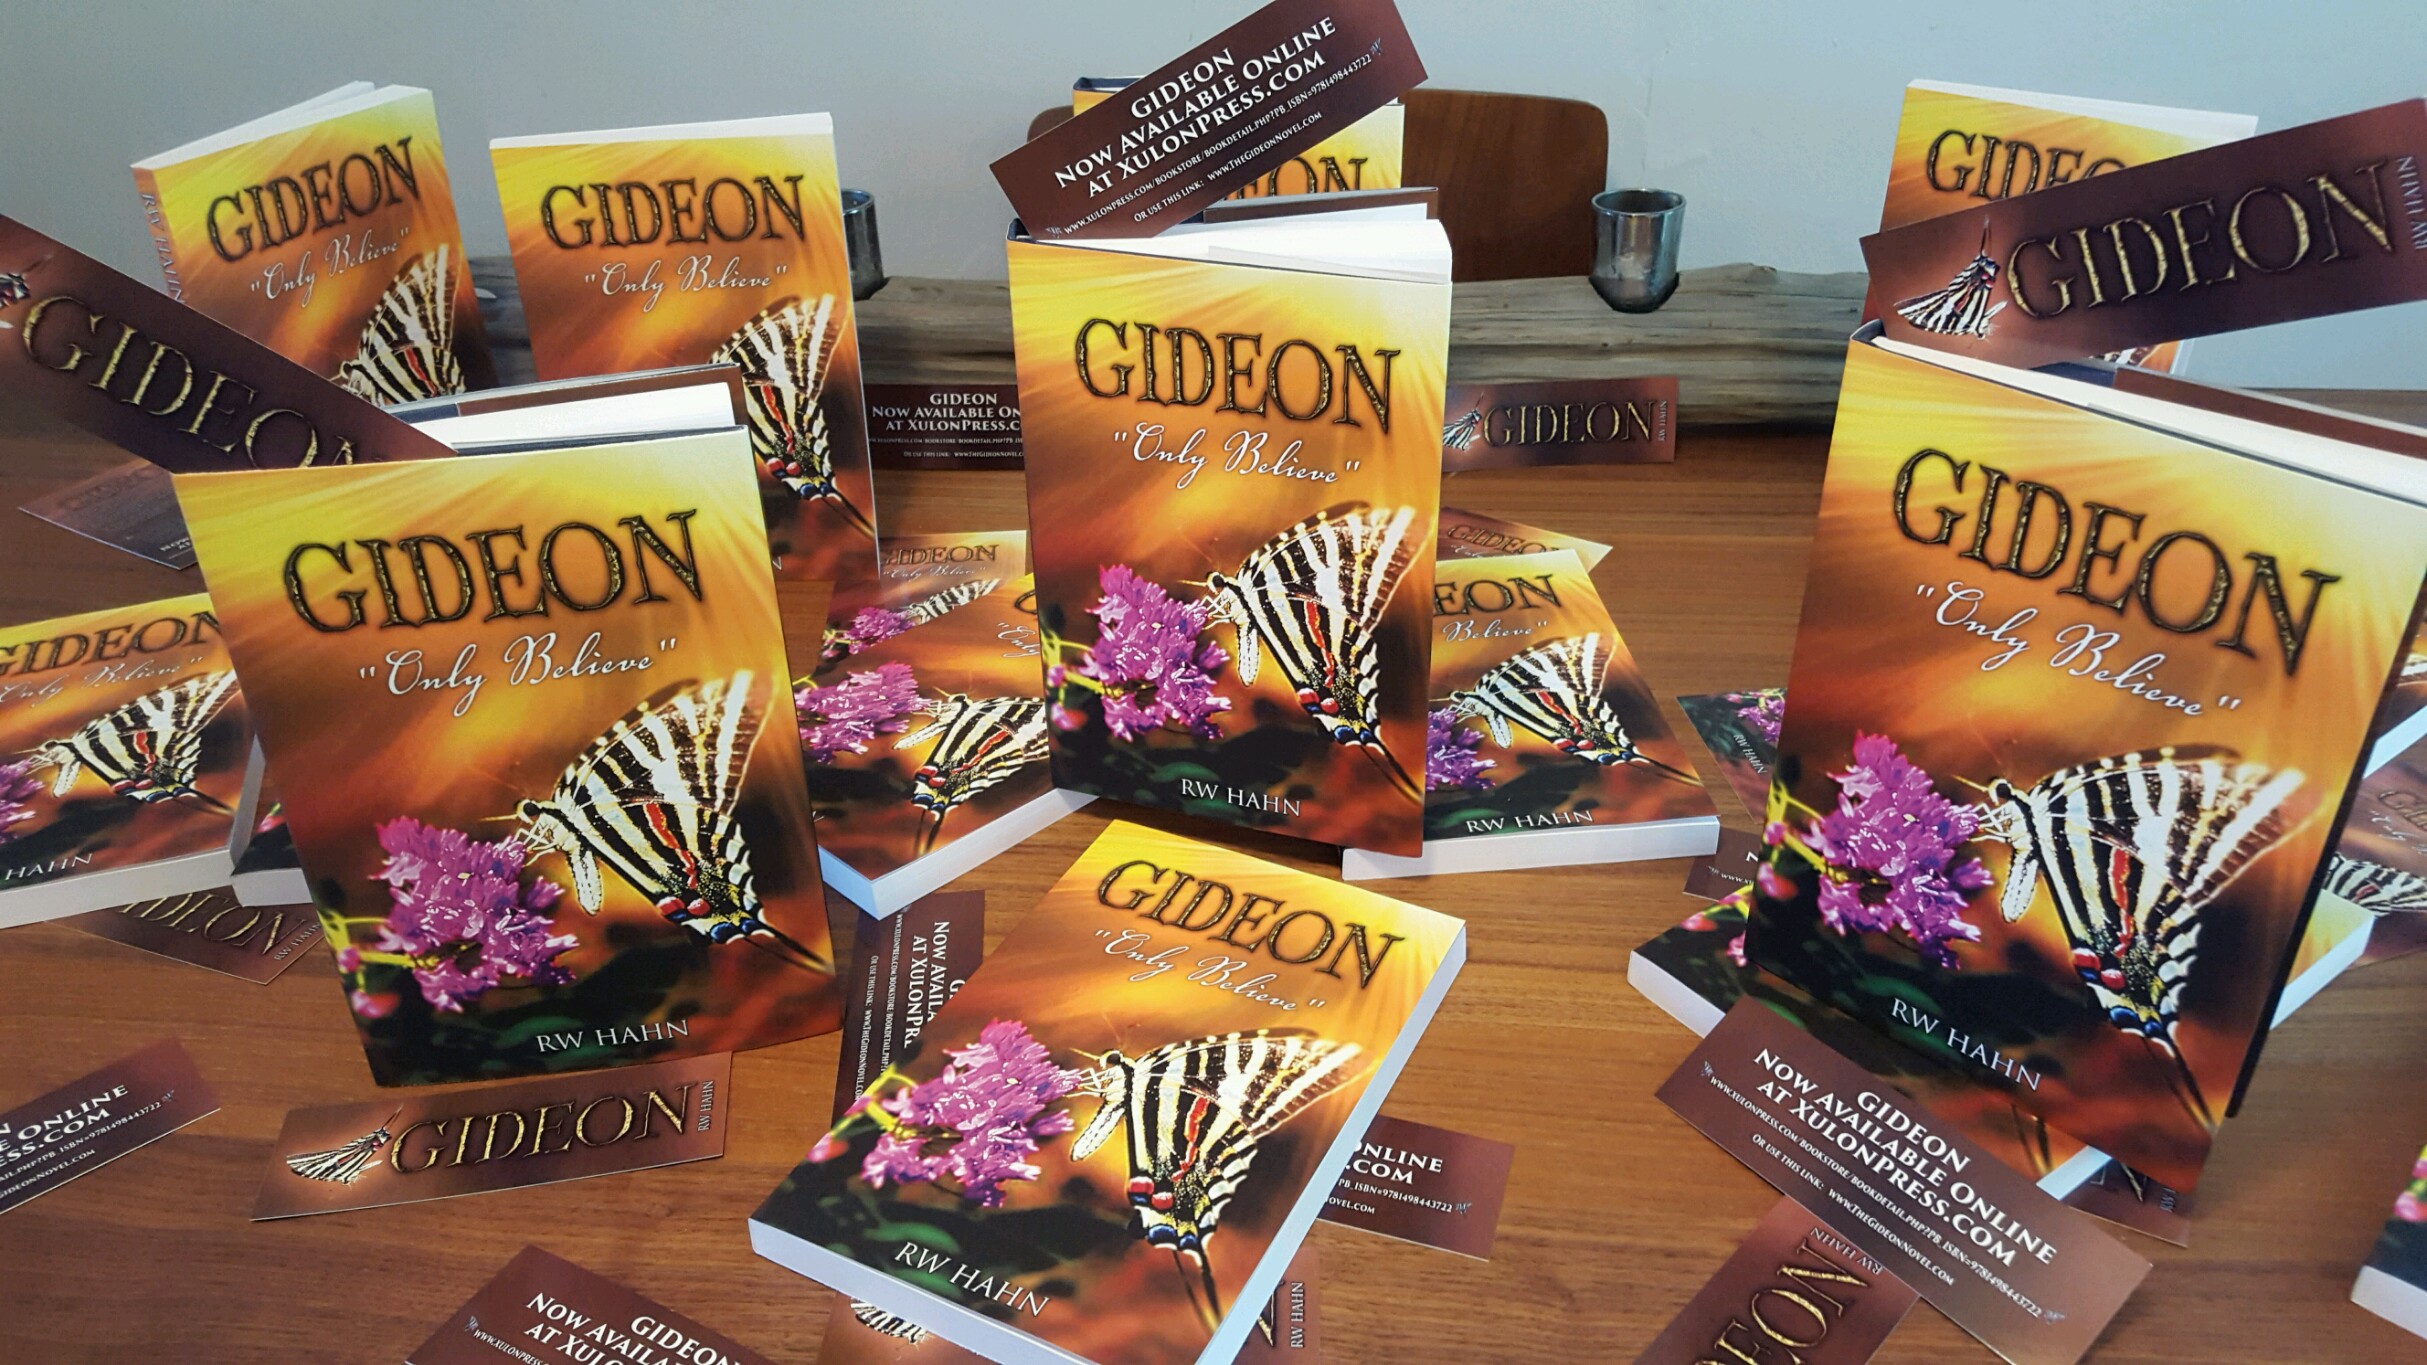 The GIDEON book